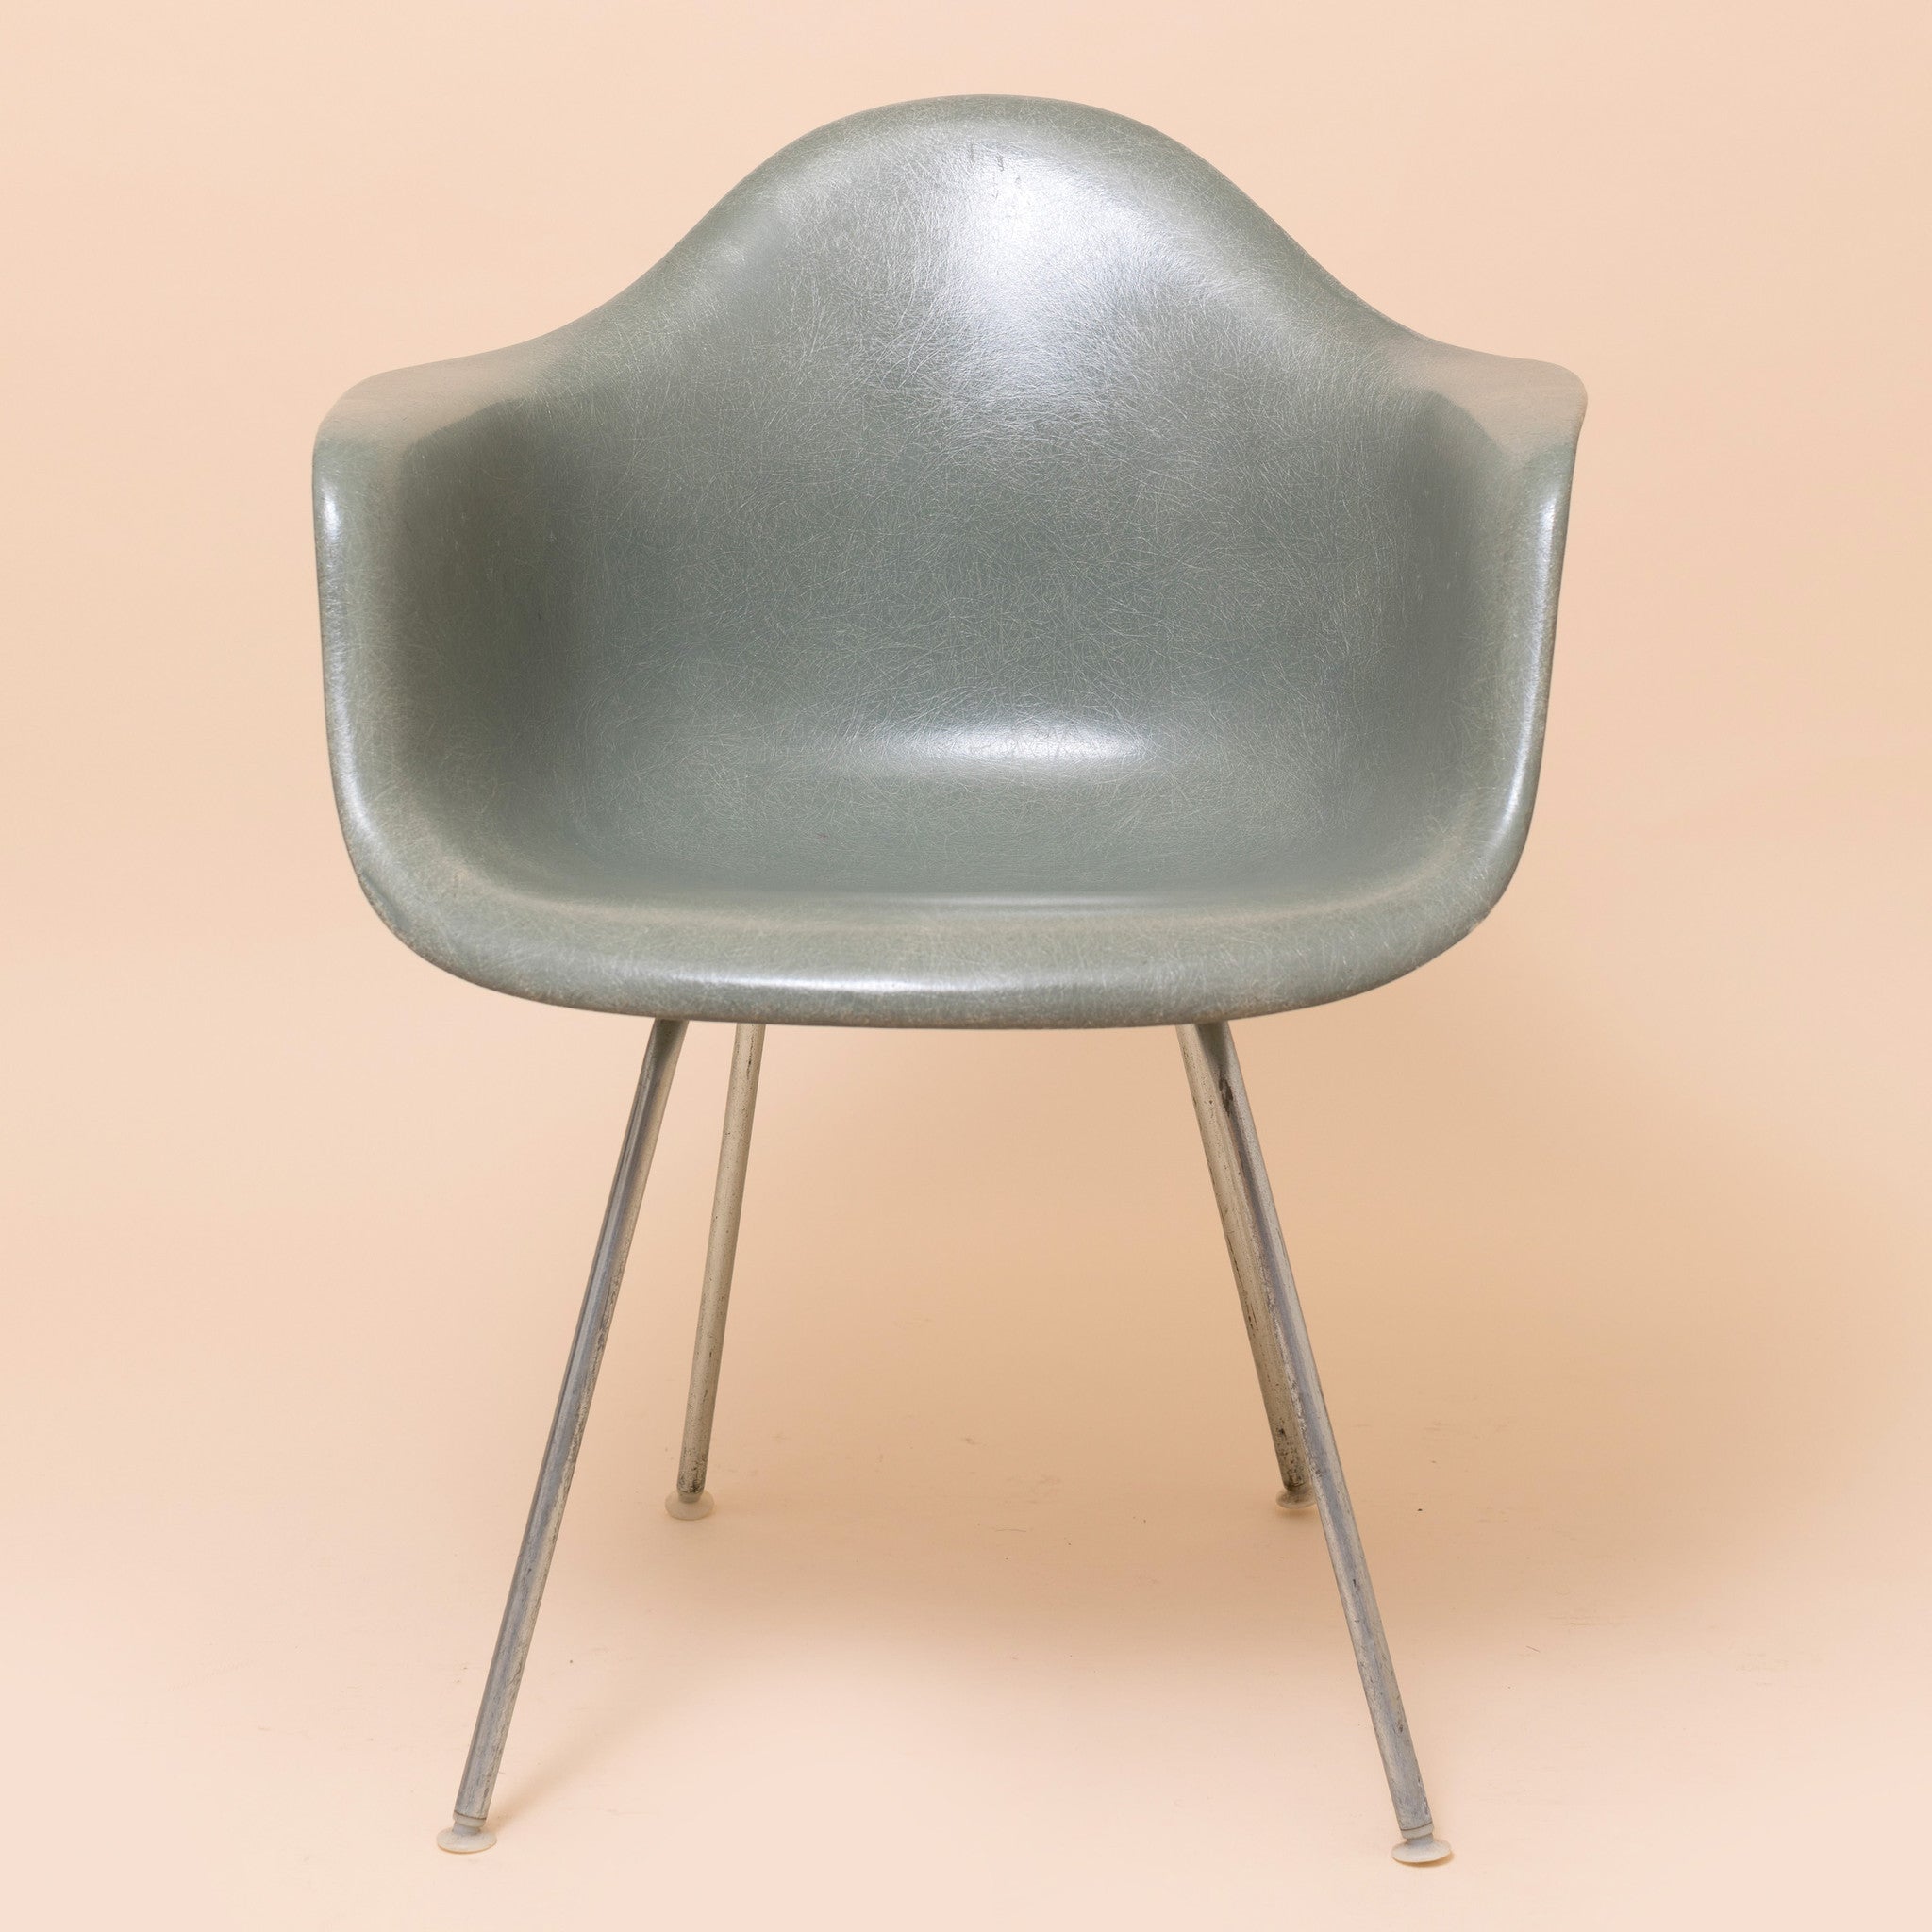 Seafoam green light Herman Miller DAX Eames chair